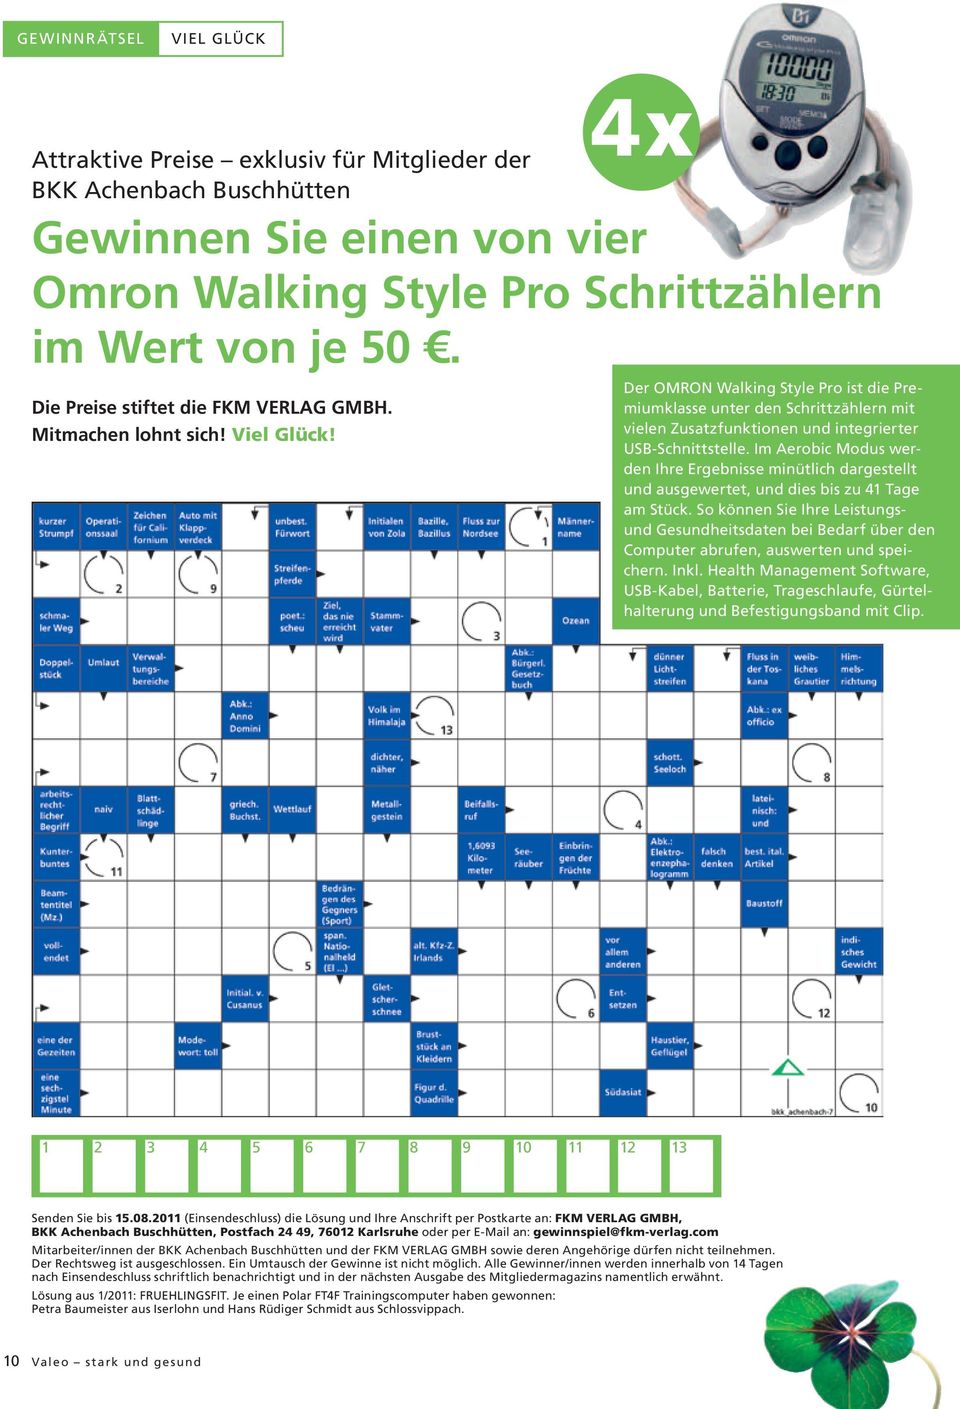 Der OMRON Walking Style Pro ist die Premiumklasse unter den Schrittzählern mit vielen Zusatzfunktionen und integrierter USB-Schnittstelle.